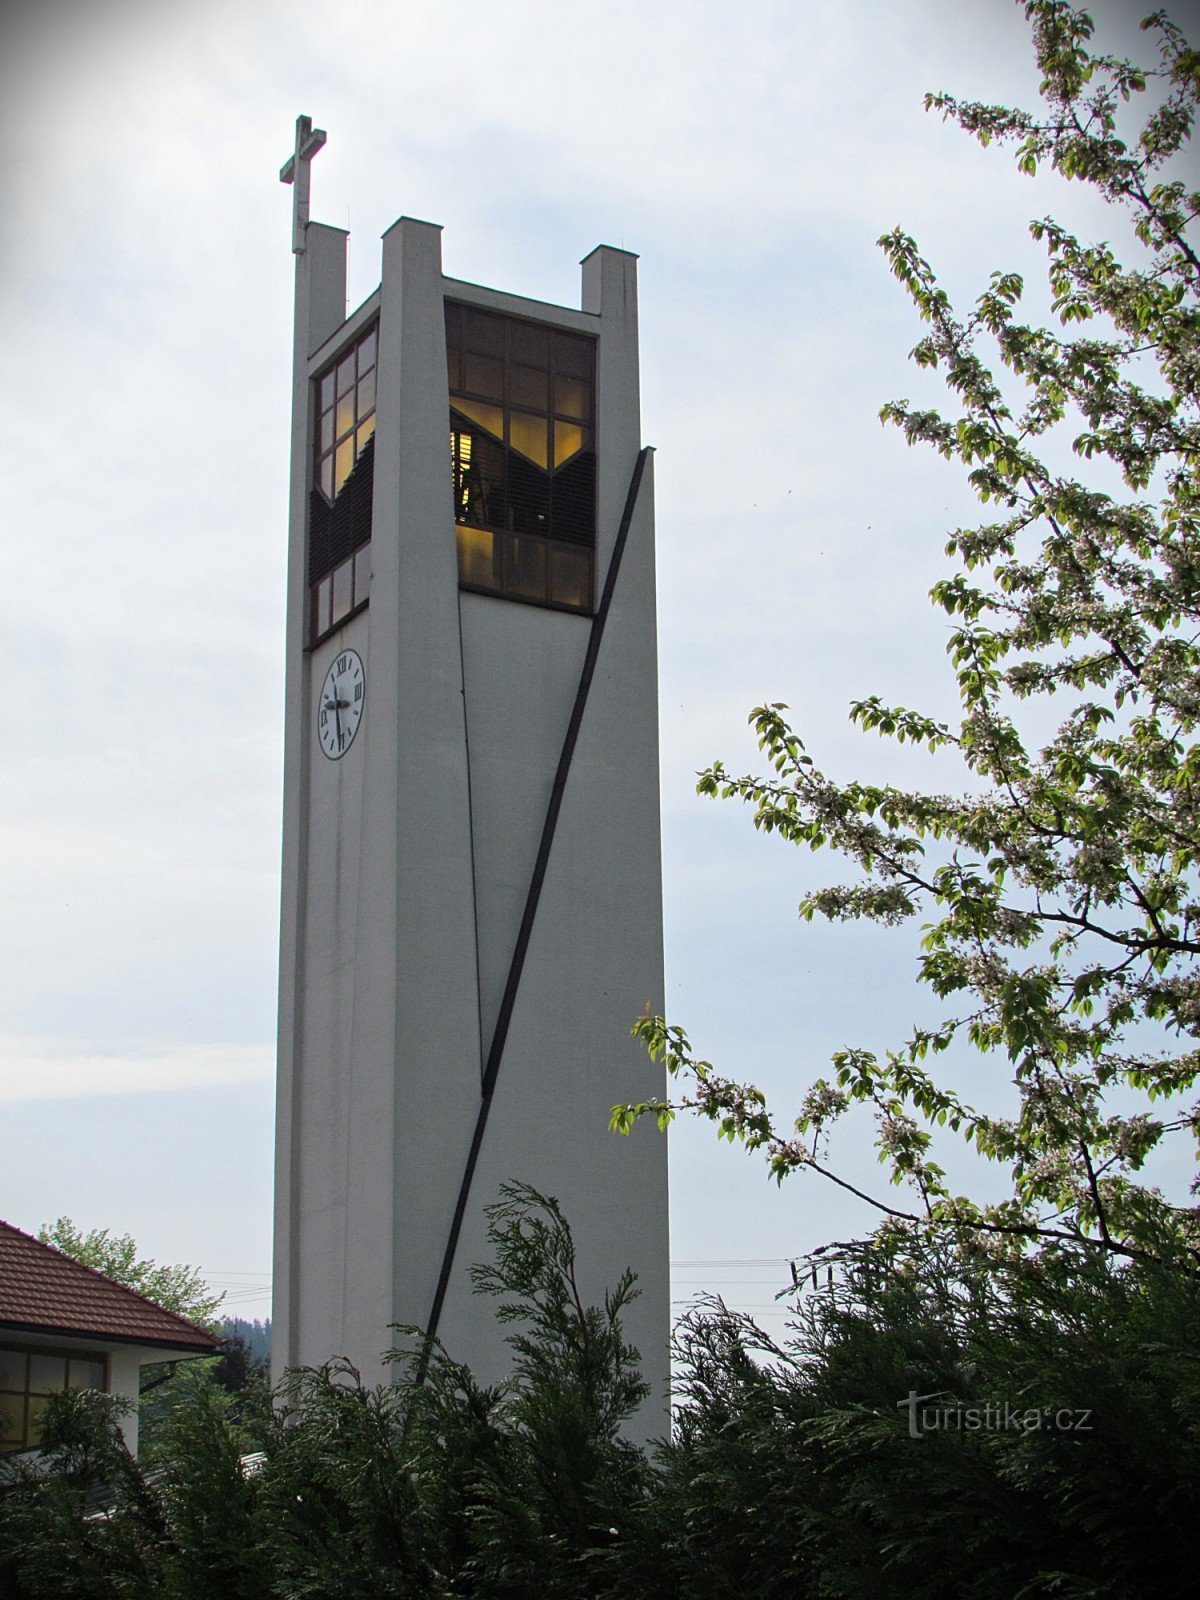 カロリンカ - マウント カルメルの聖母教会